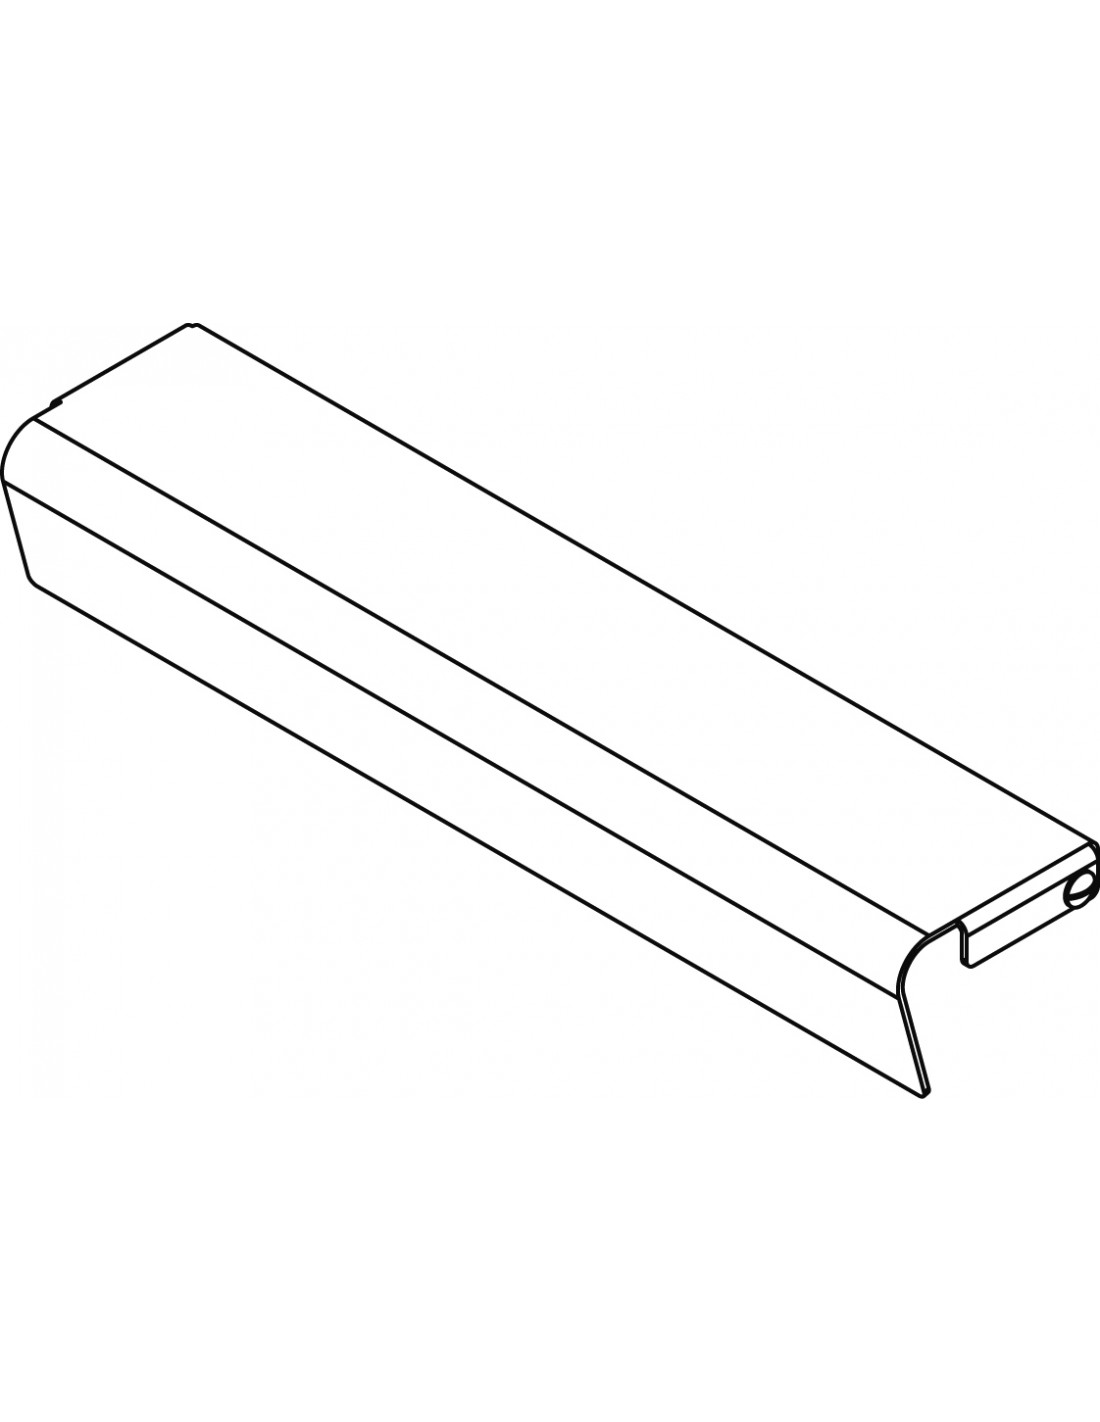 Kit de protección frontal Fry-top - Dimensiones cm. 78x 8x 6h